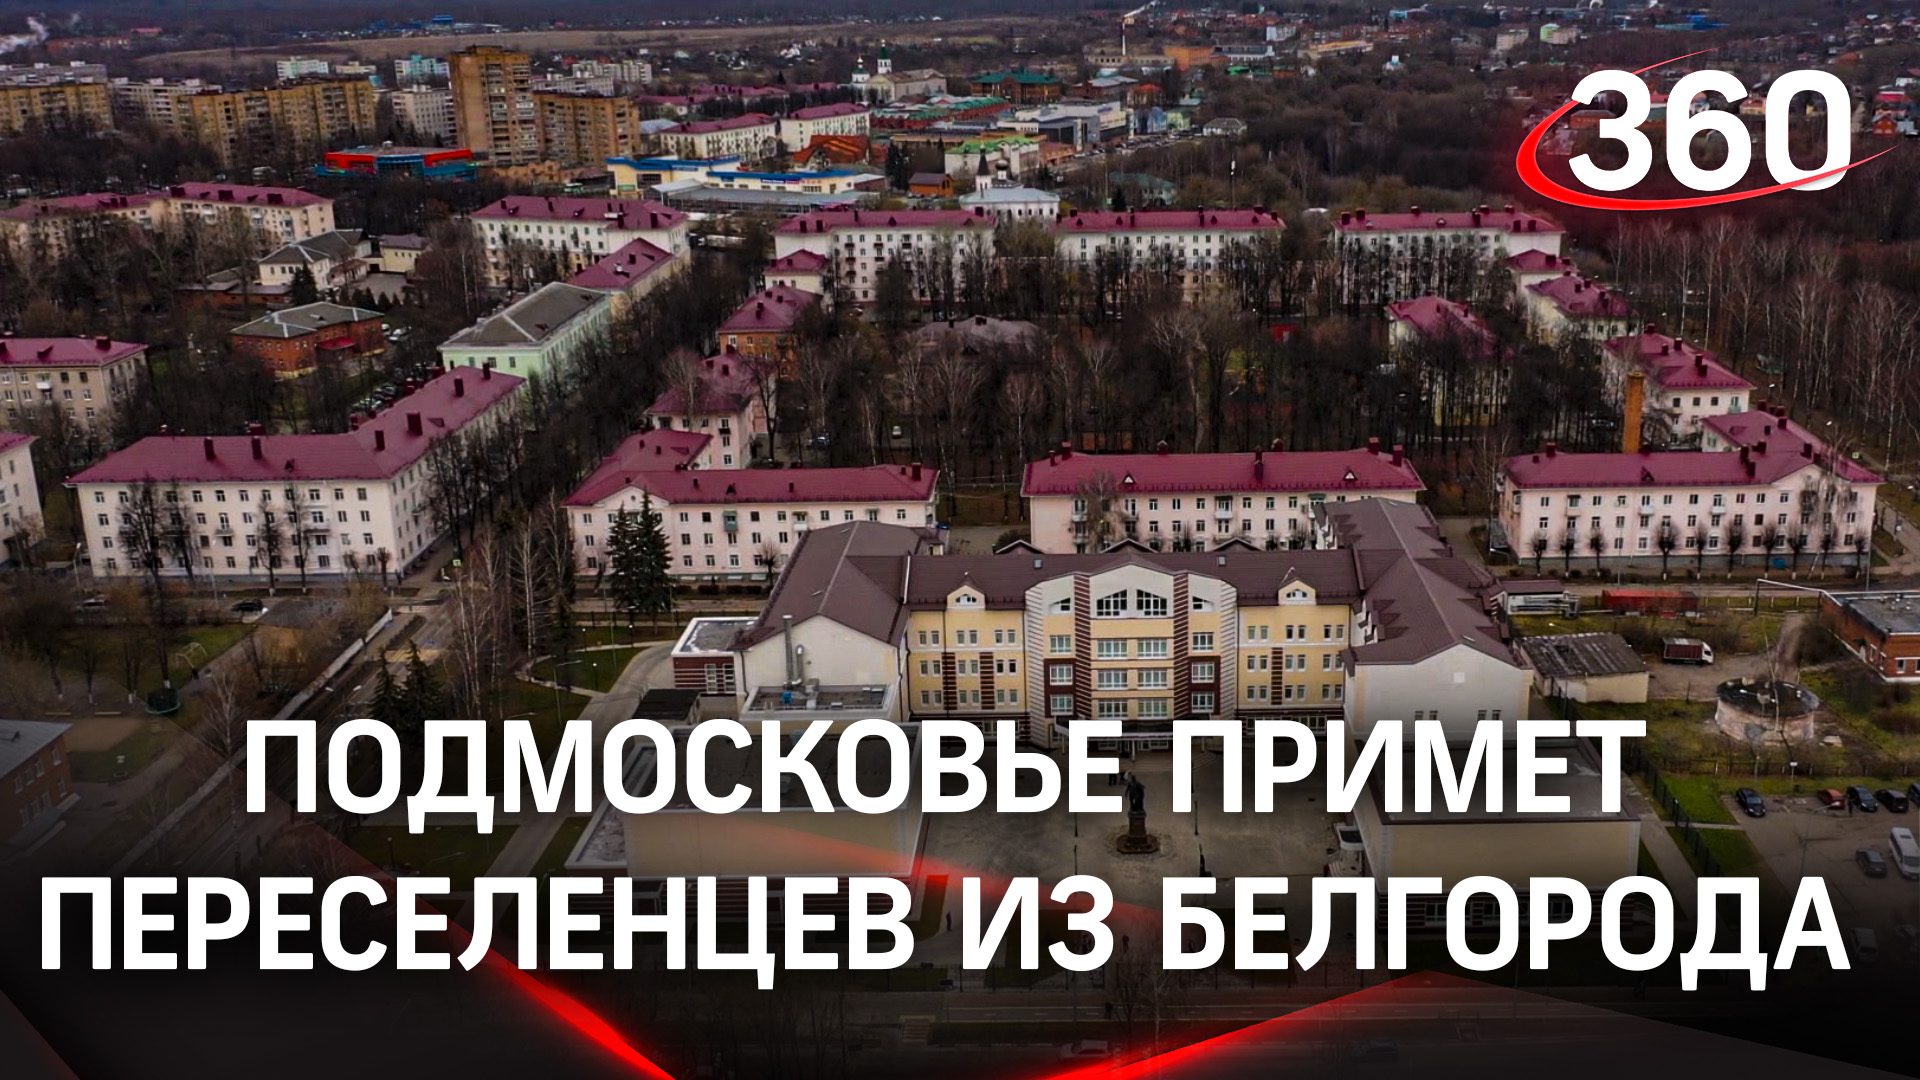 550 переселенцев из Белгородской области примет Подмосковье - людей разместят в санаториях